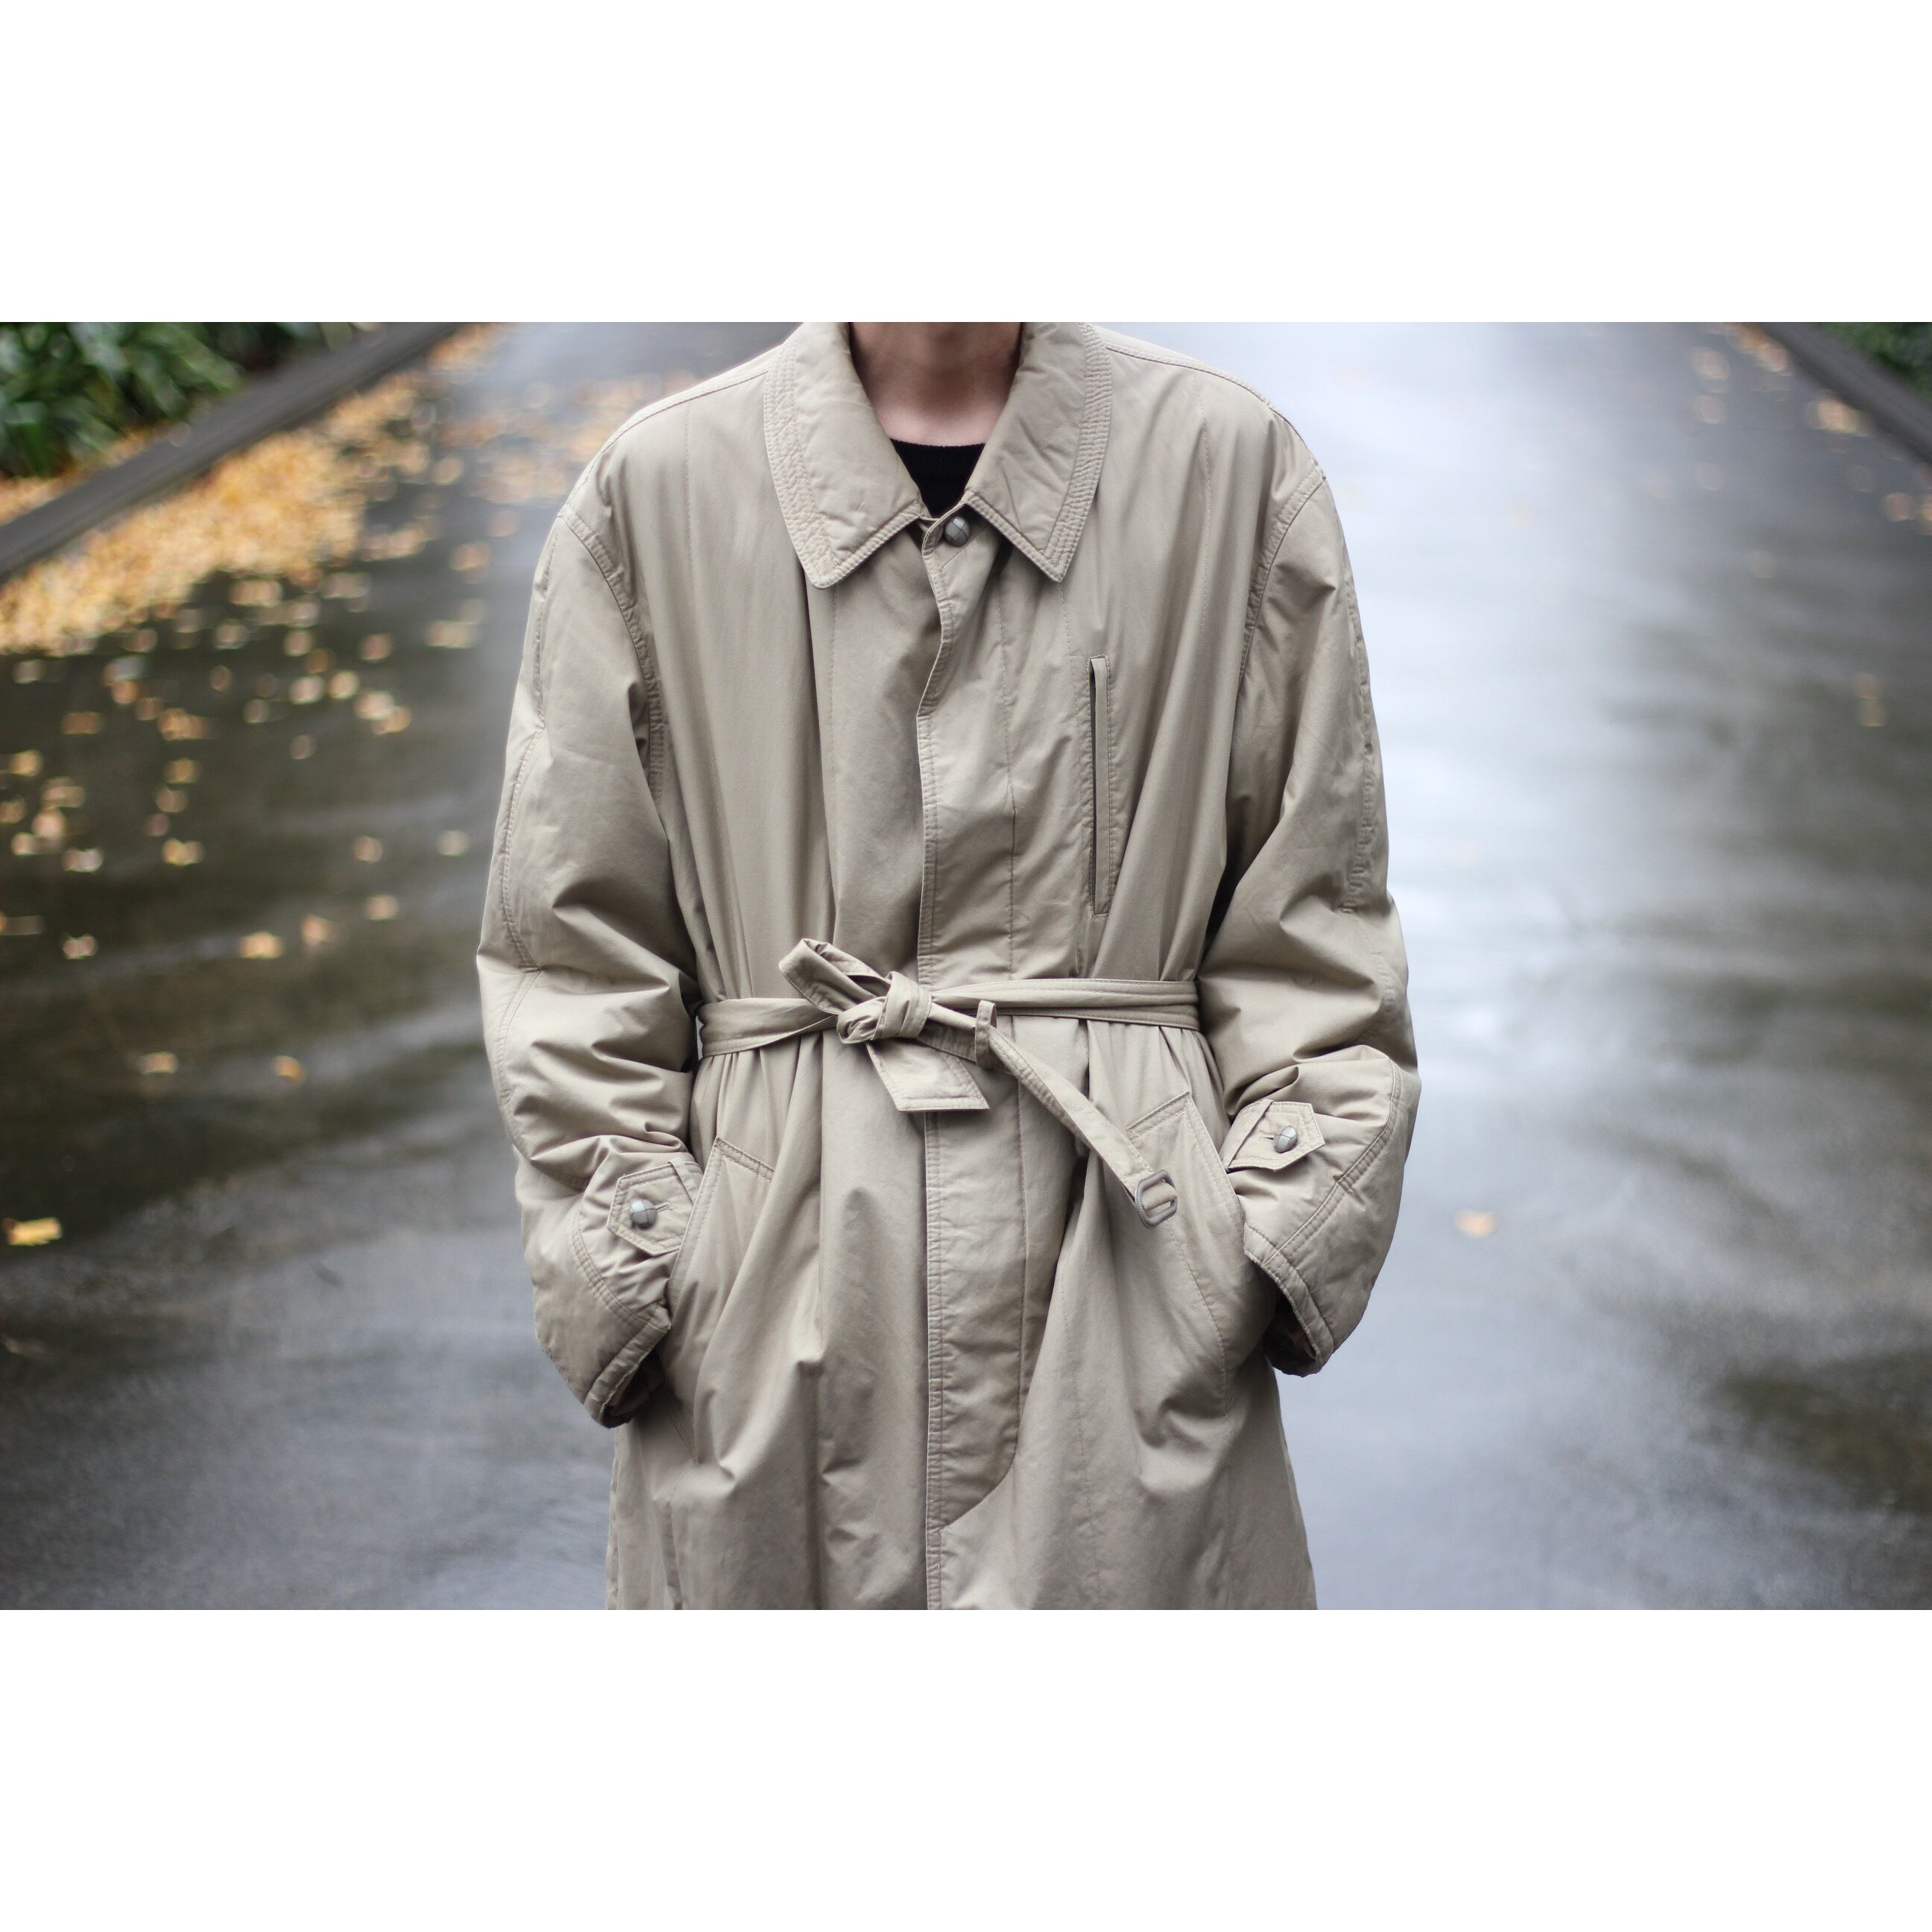 【激レア】70svintage Neiman marcus nylon coat